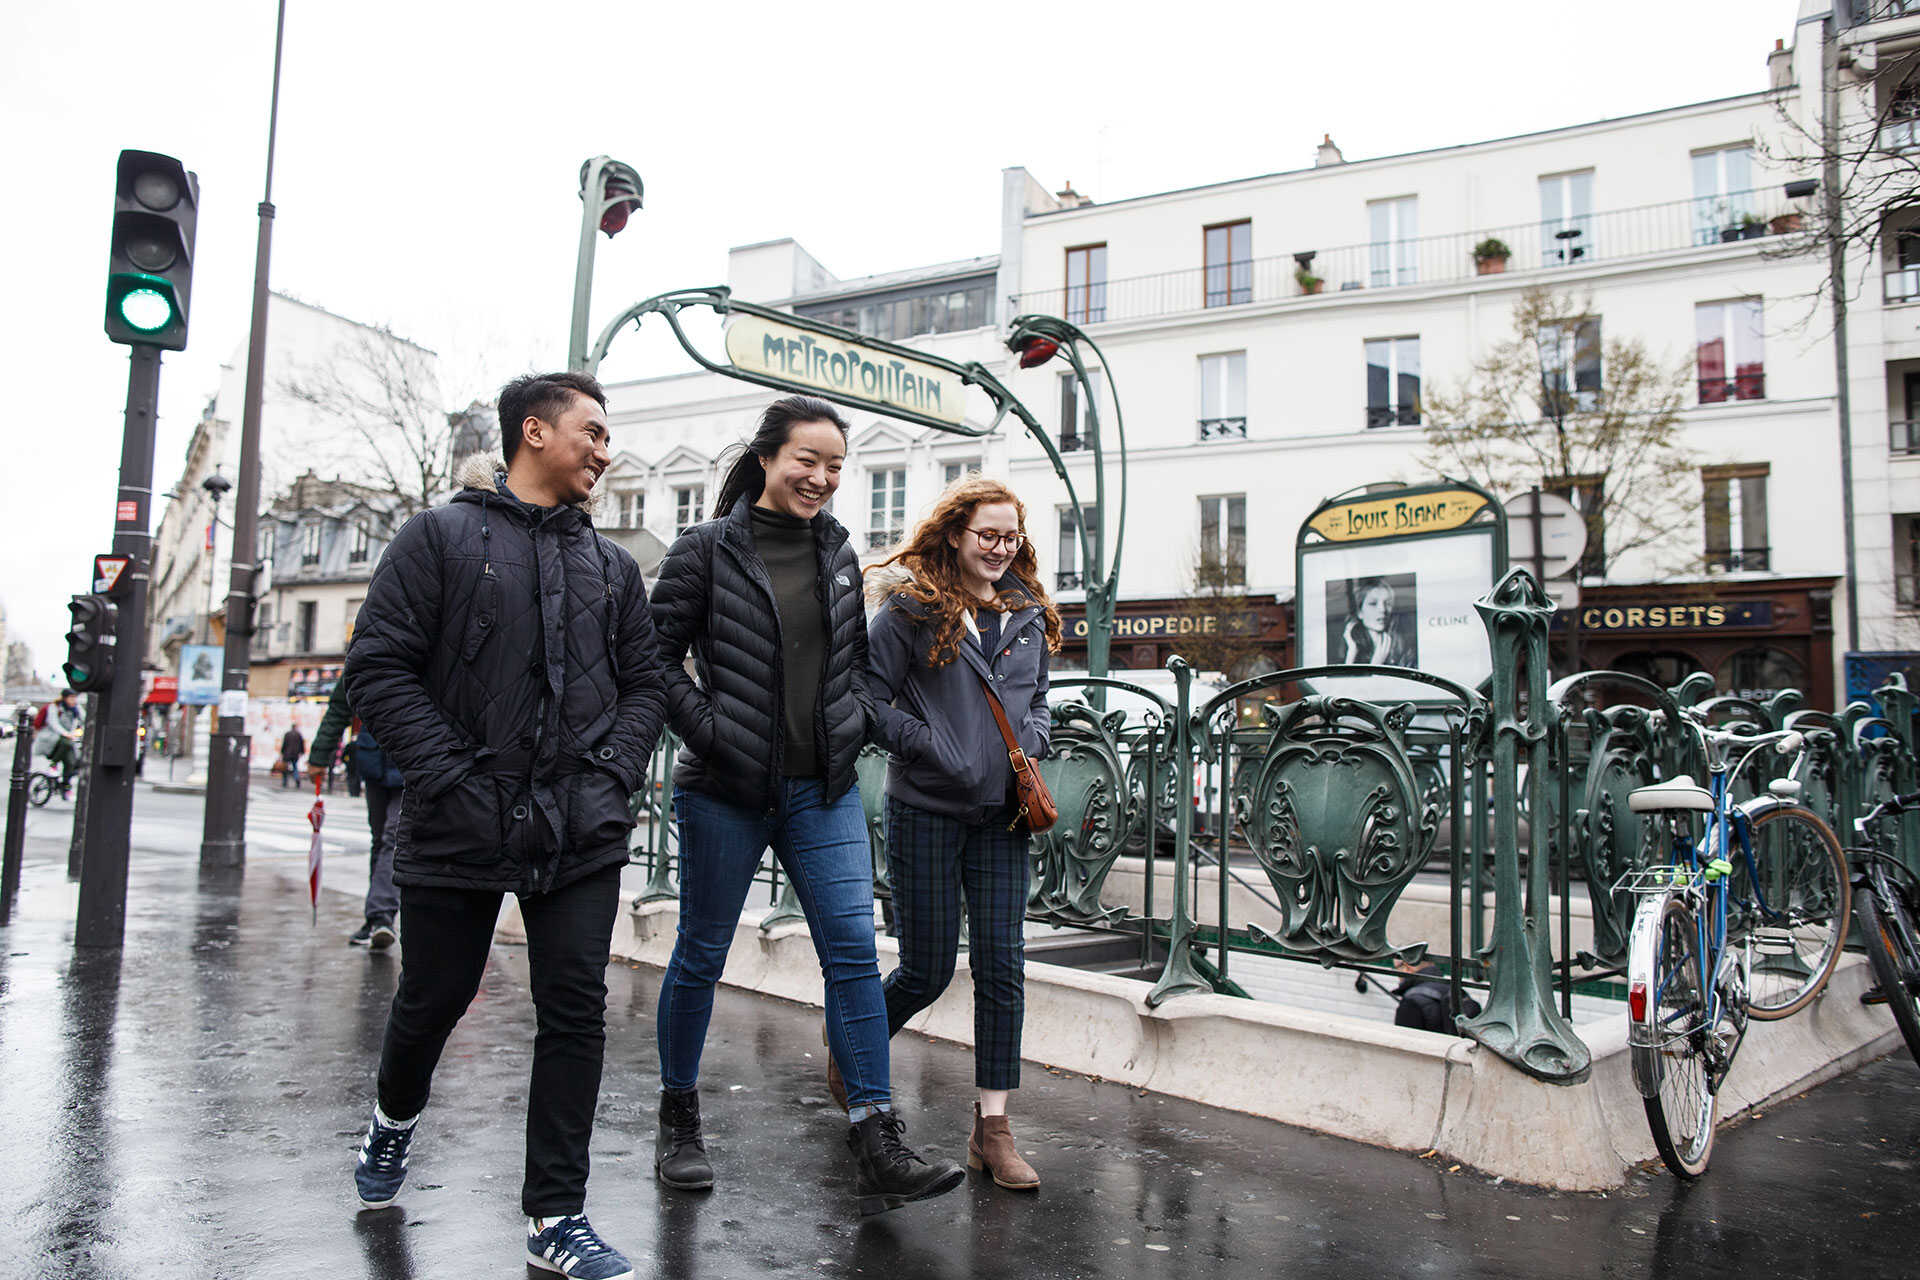 Three students walking down a Paris street